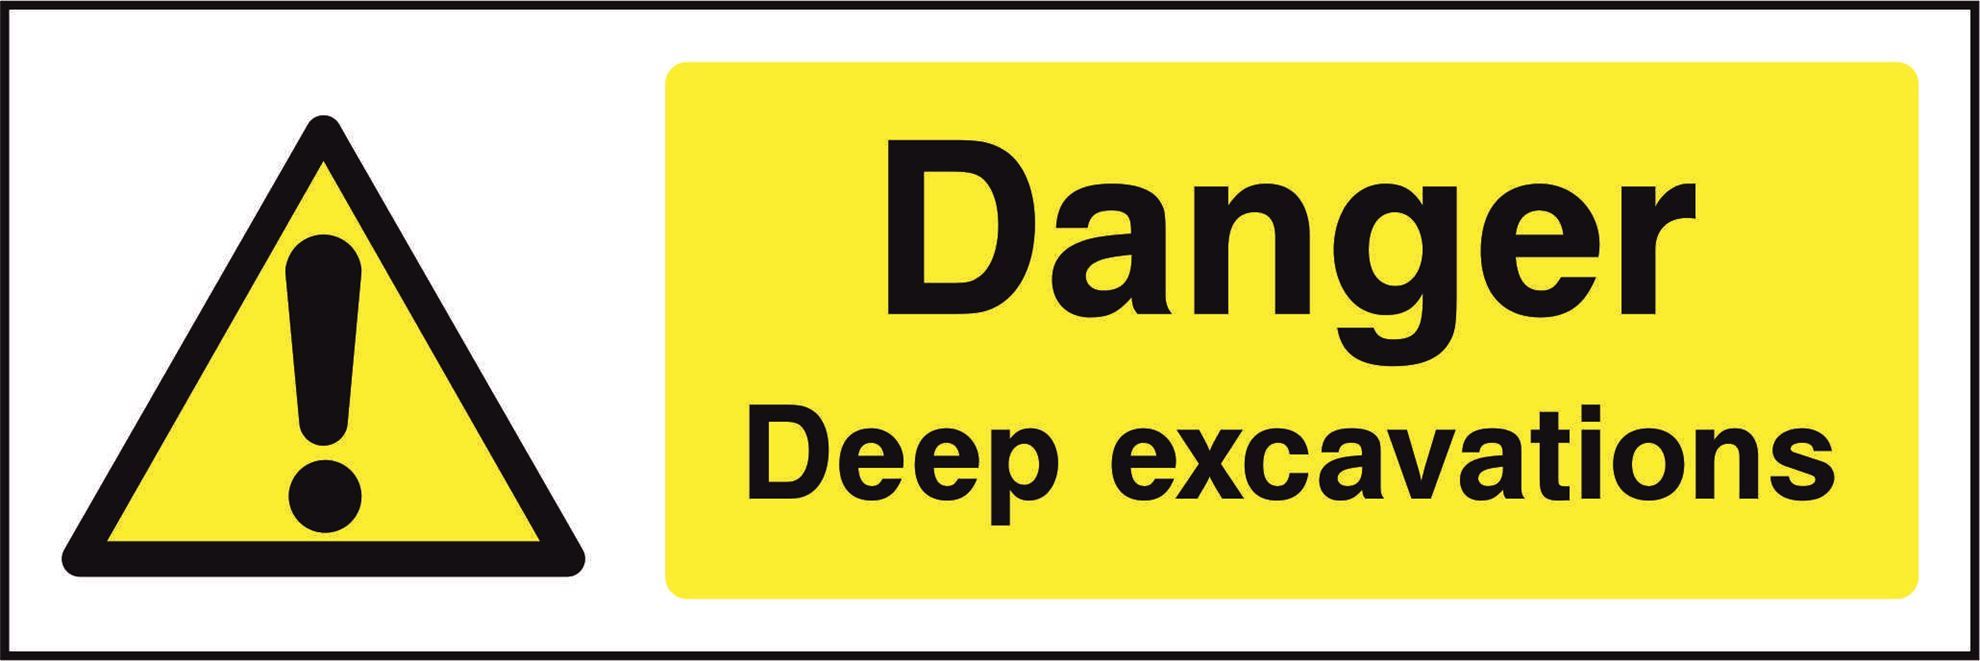 Danger Deep excavations